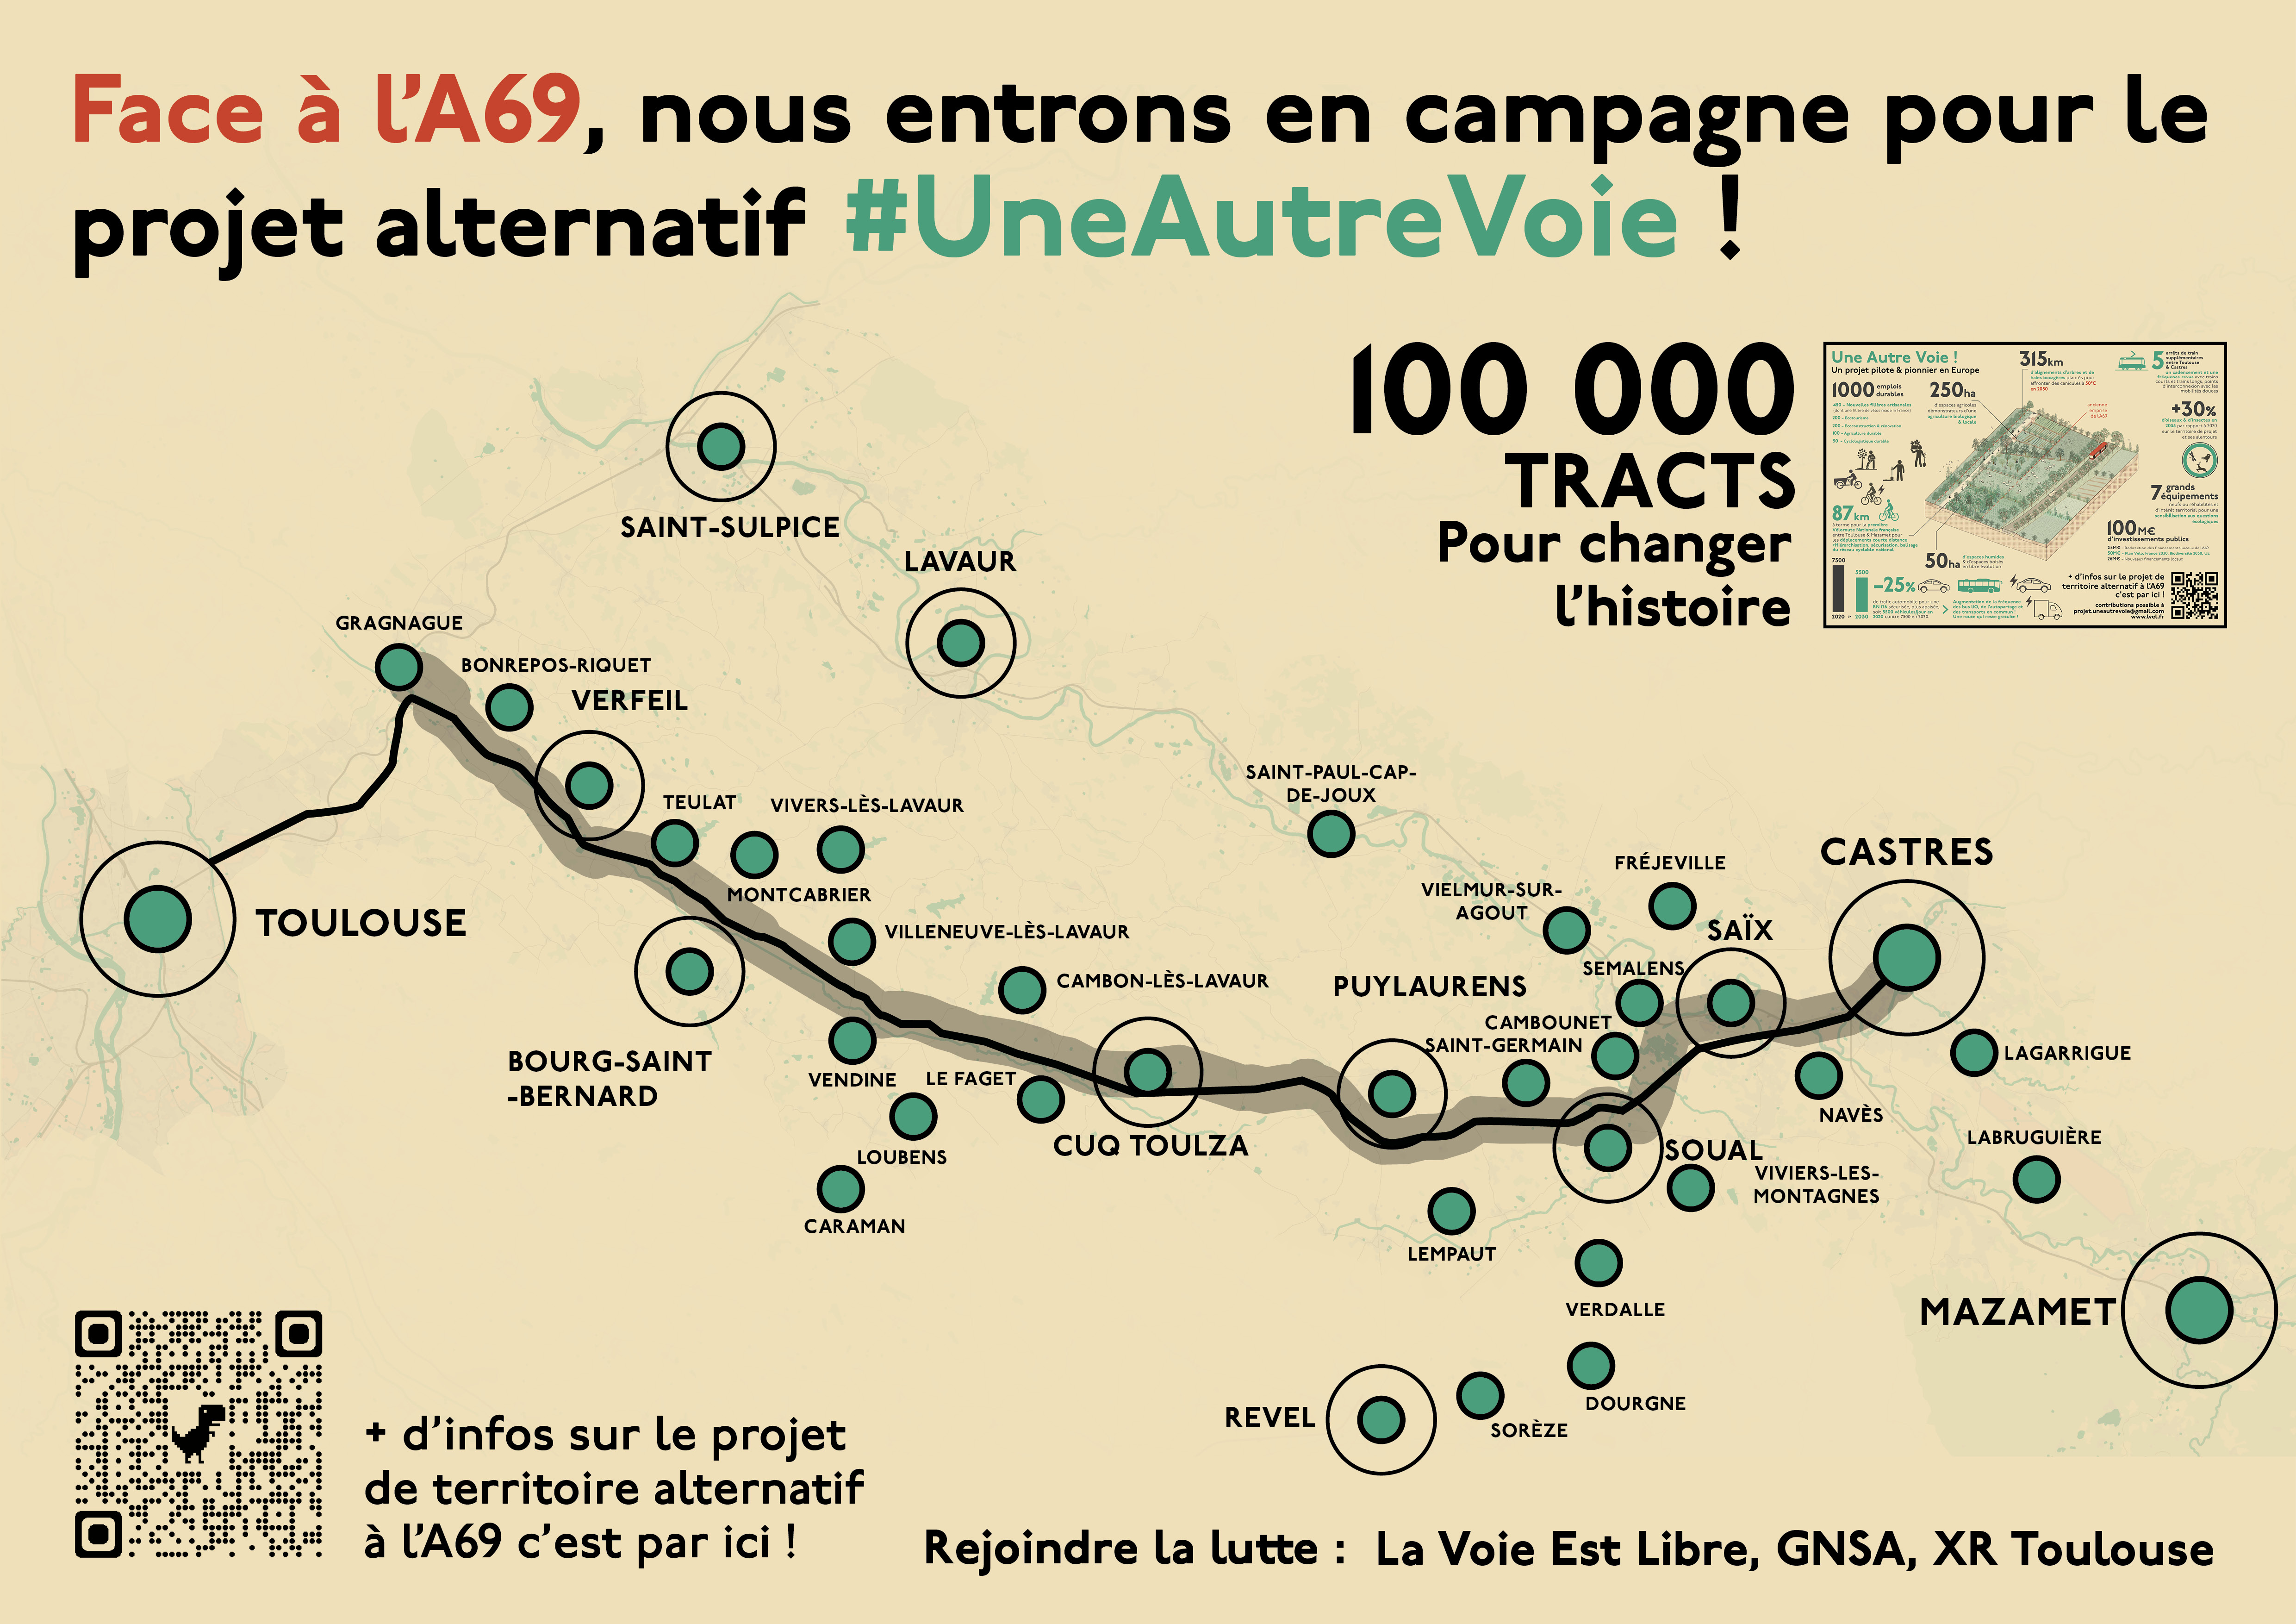 Face à l'A69, nous entrons en campagne pour le projet alternatif #UneAutreVoie ! 100 000 tracts pour changer l'histoire.